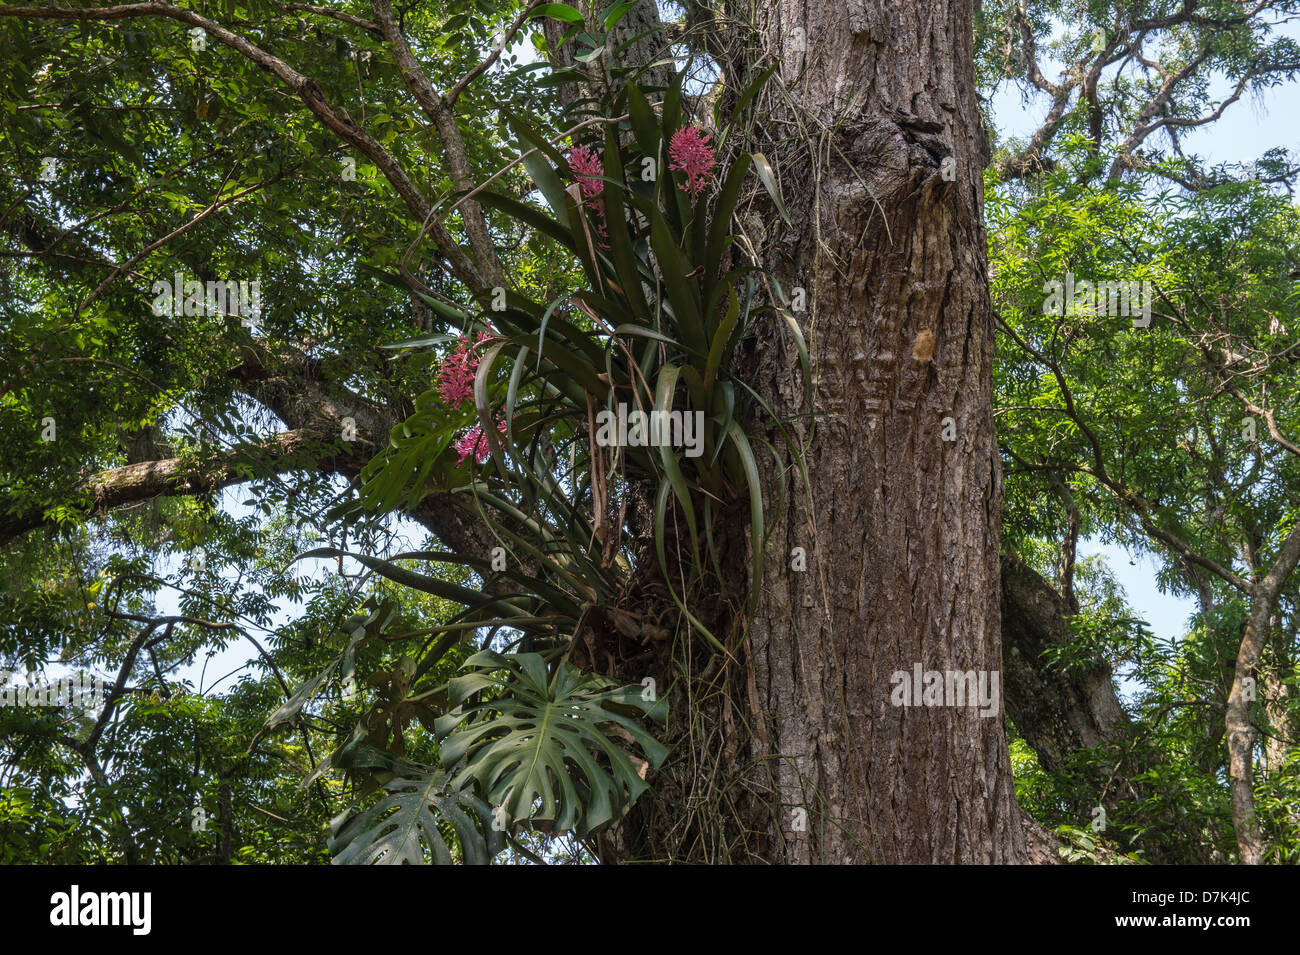 Cedrela odorata or Cedro-cheiroso, Meliaceae family, Rio de Janeiro Botanical Gardens, Brazil Stock Photo